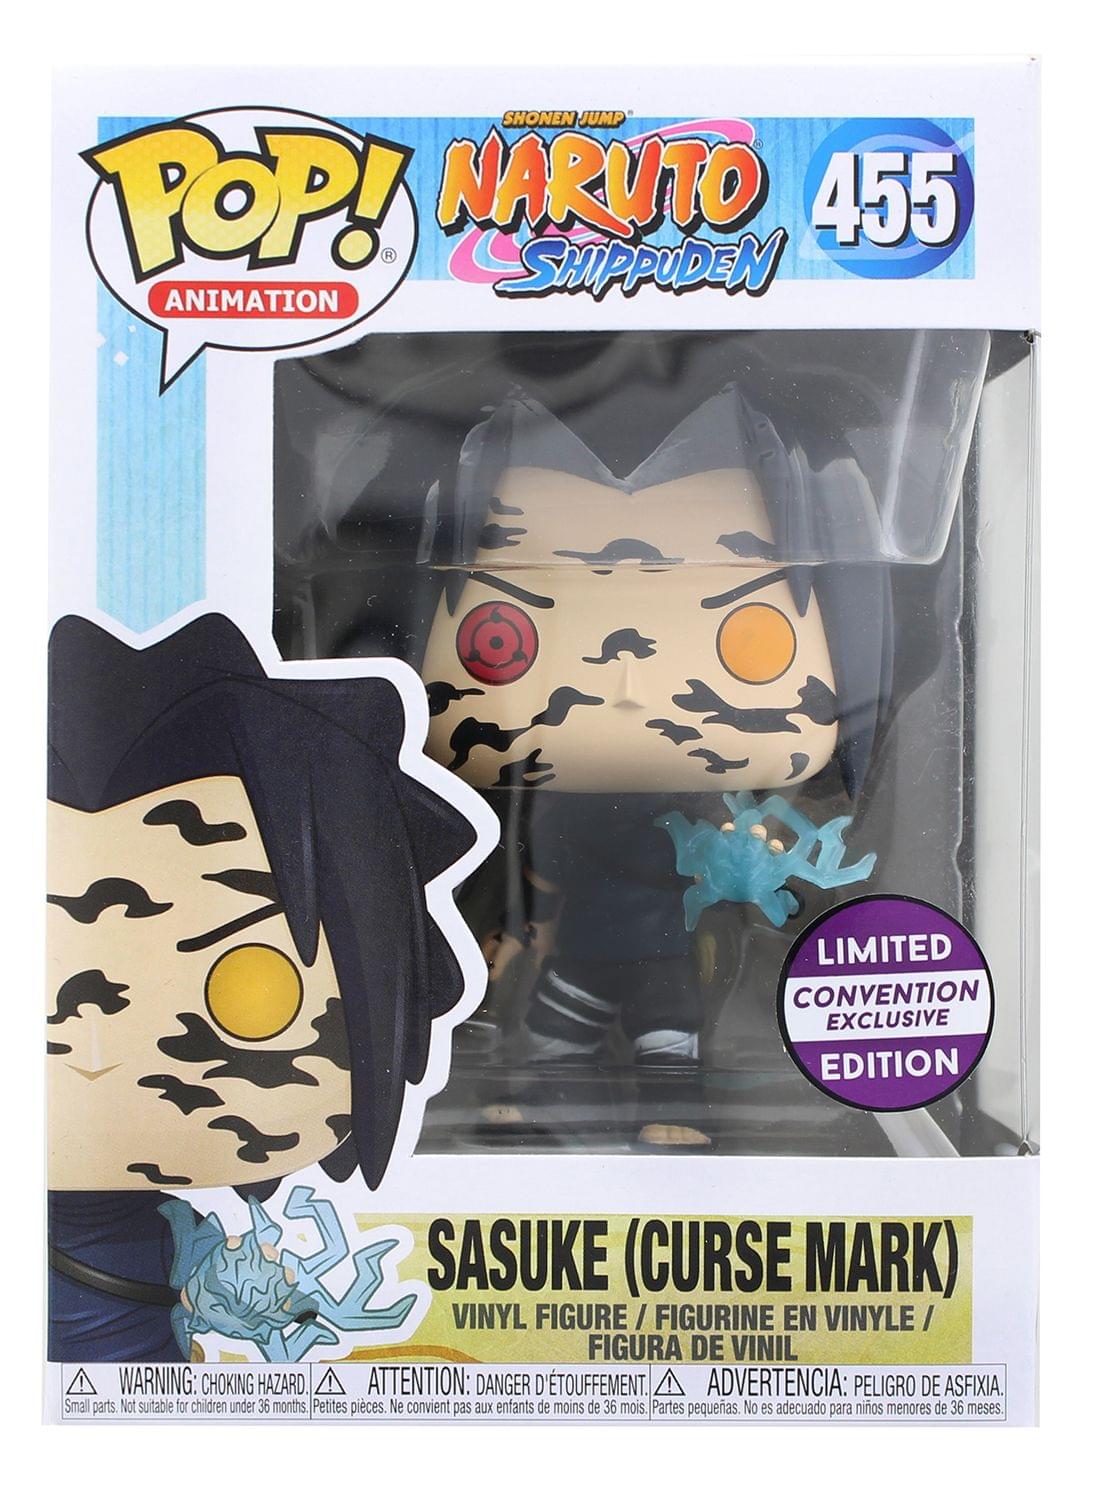 Sasuke Curse Mark Figure, Convention Exclusive,  Naruto Funko Pop Animation 3.75 Inches Funko Pop 455